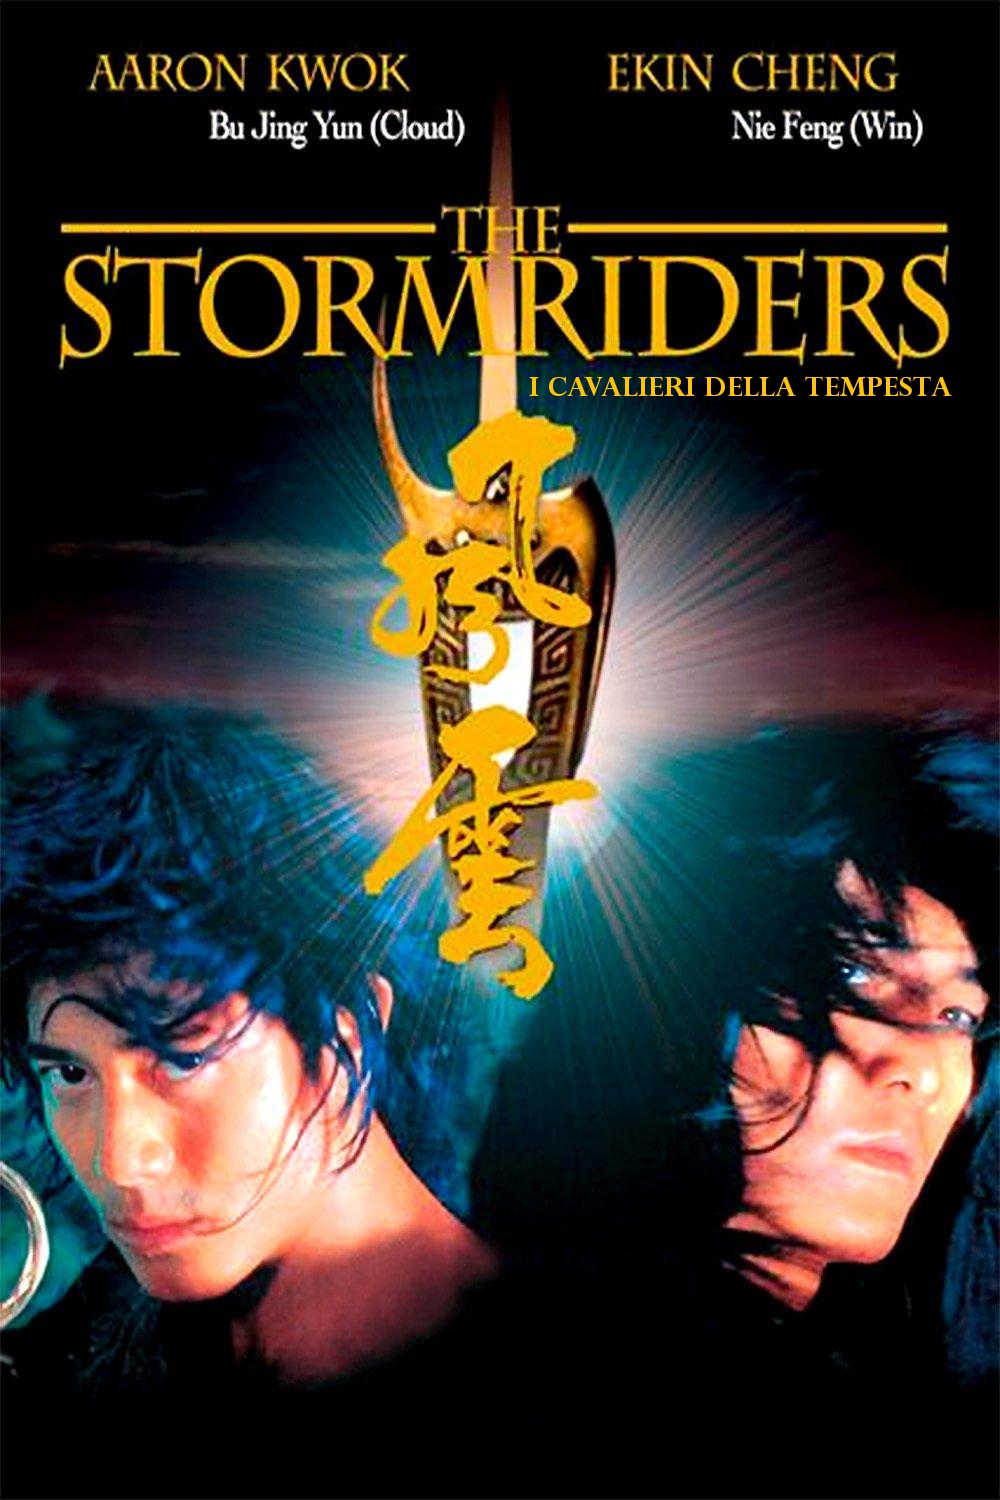 The Stormriders – I cavalieri della tempesta (1998)